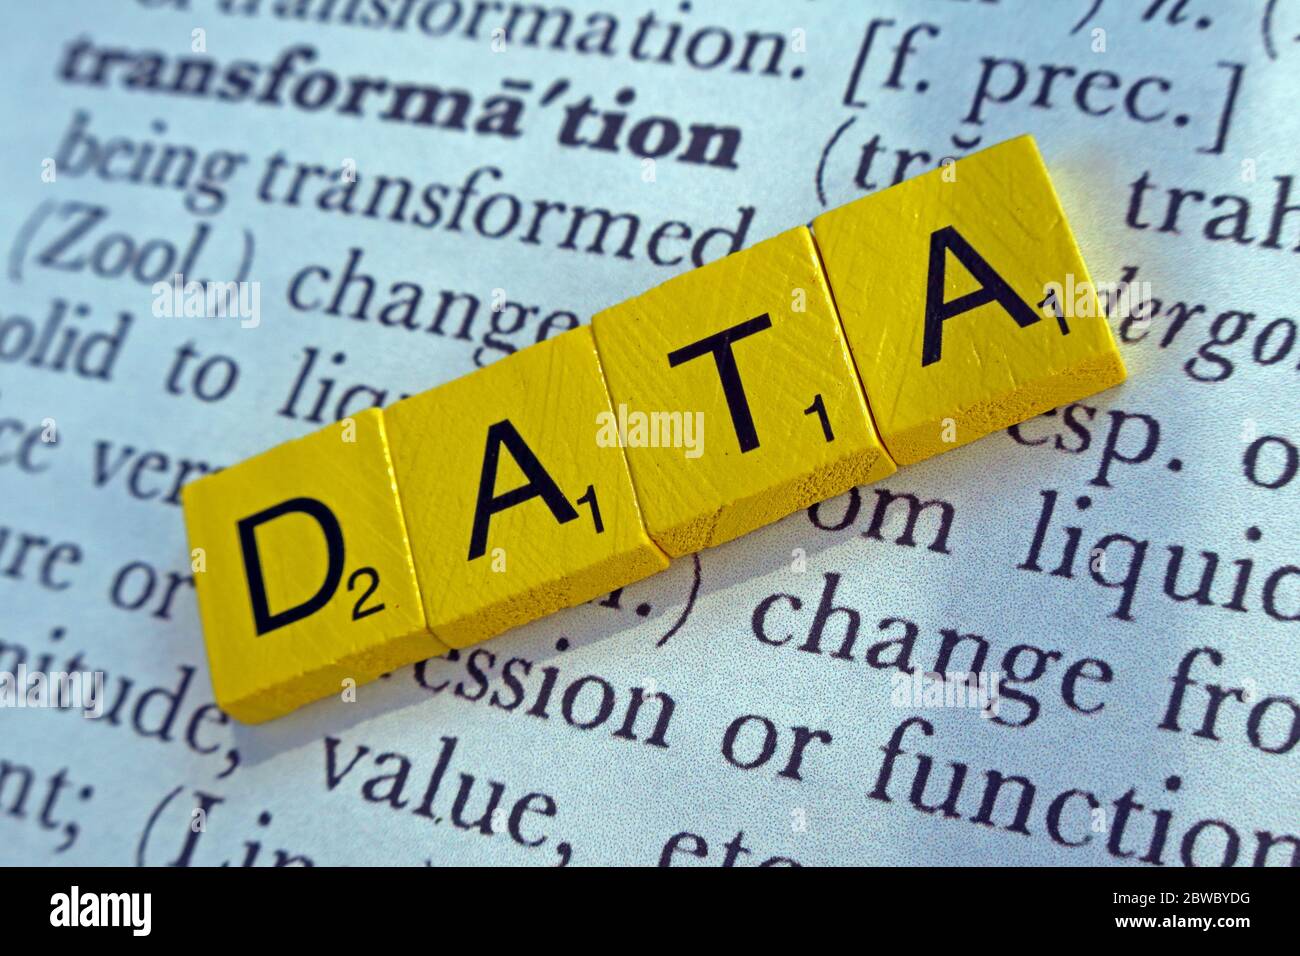 Trasformazione dei dati, trasformazione dei dati, in lettere scrabble Foto Stock